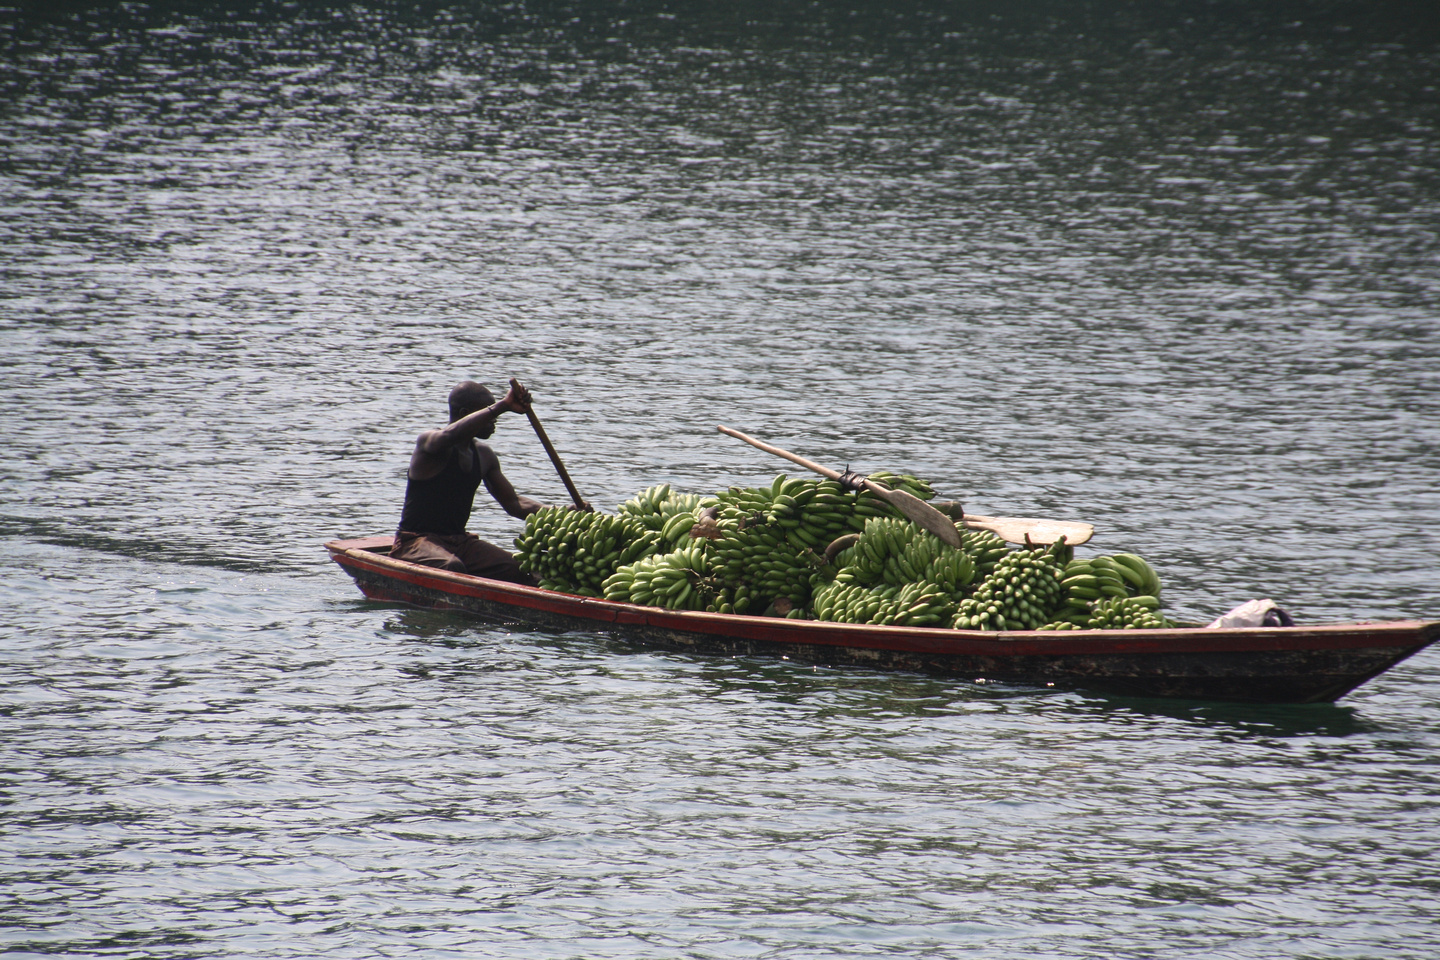 Inwoner van Rwanda vervoert bananen met een boot door af te zetten met een lange stok.